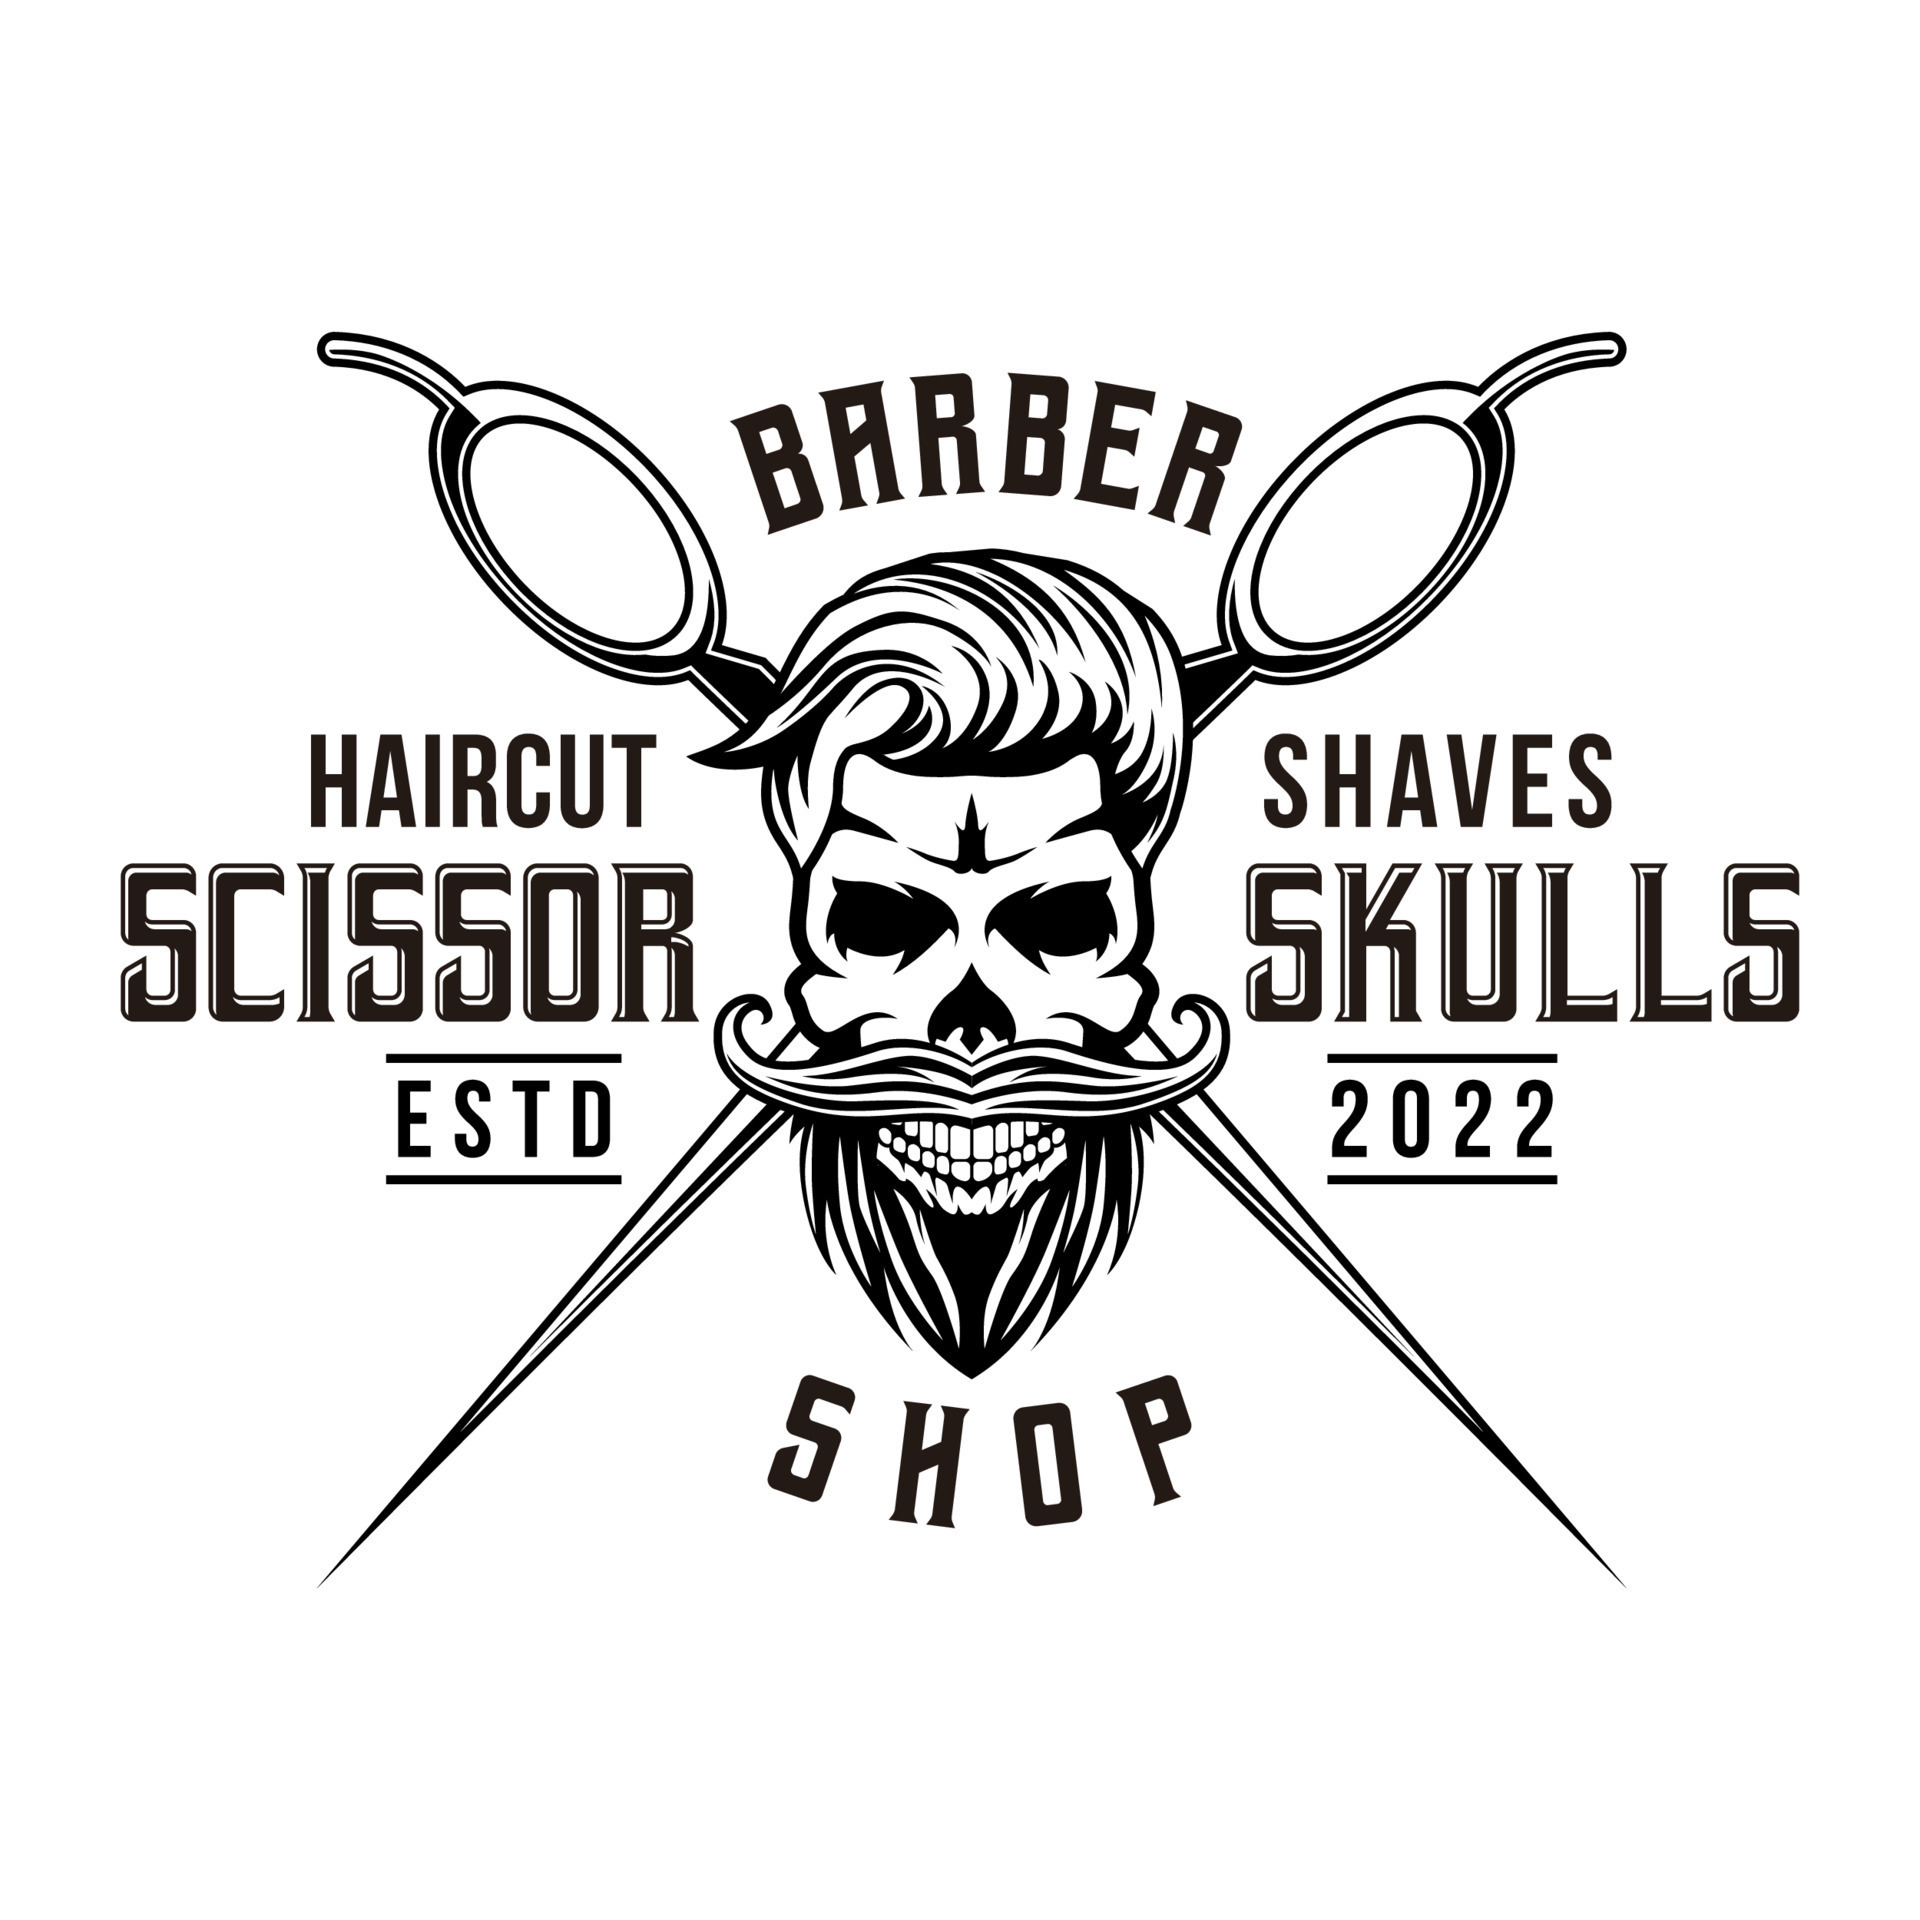 Barber shop vintage label, badge, or emblem with scissors, hair